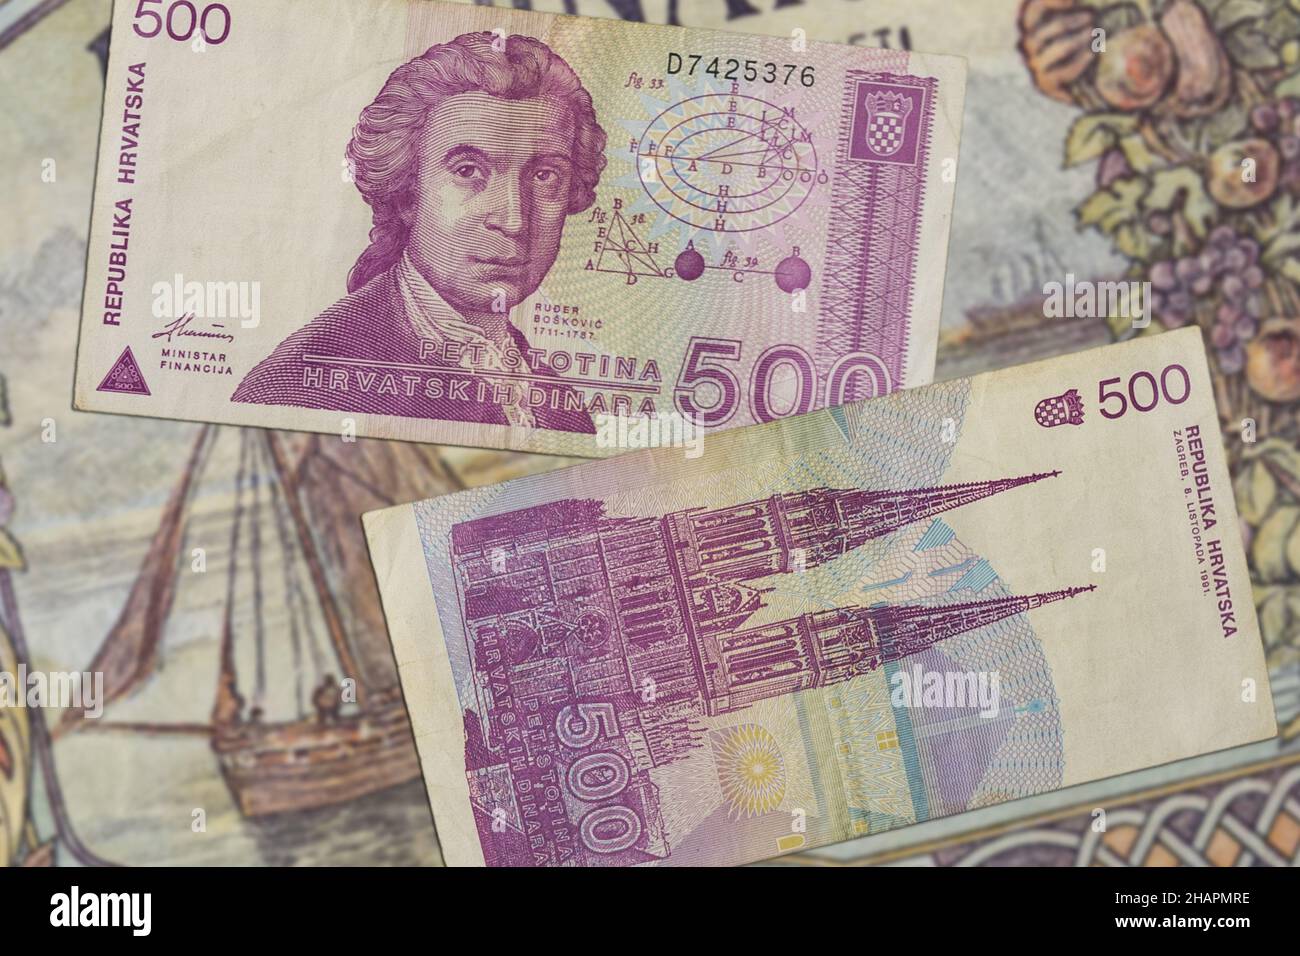 Vista superior de los billetes dinares croatas desde principios de 90s Foto de stock